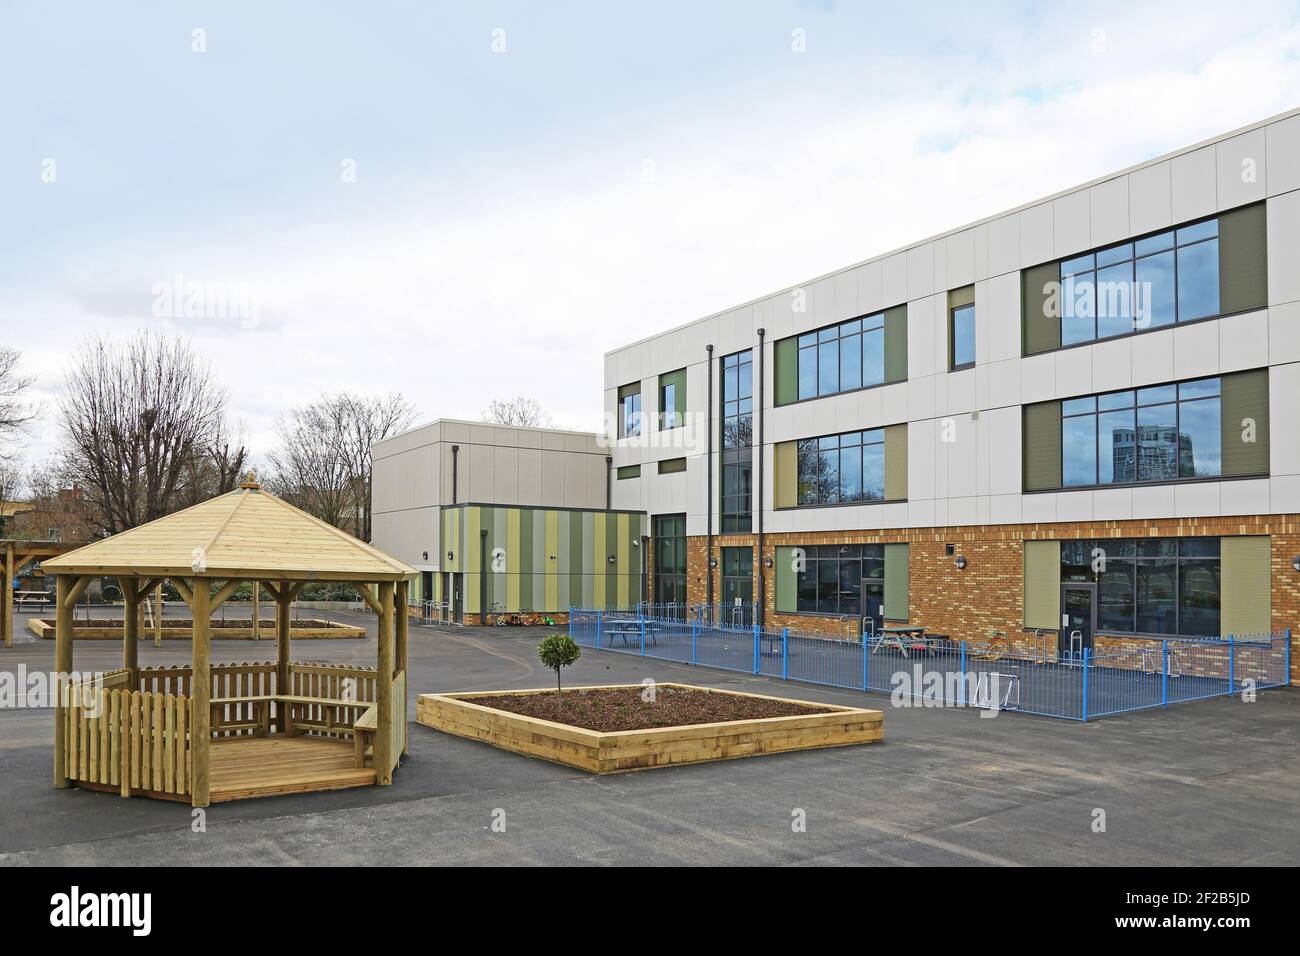 Scuola primaria ricostruita di recente a Stockwell, a sud di Londra, Regno Unito. Vista esterna che mostra il parco giochi e gli spazi ricreativi. Foto Stock